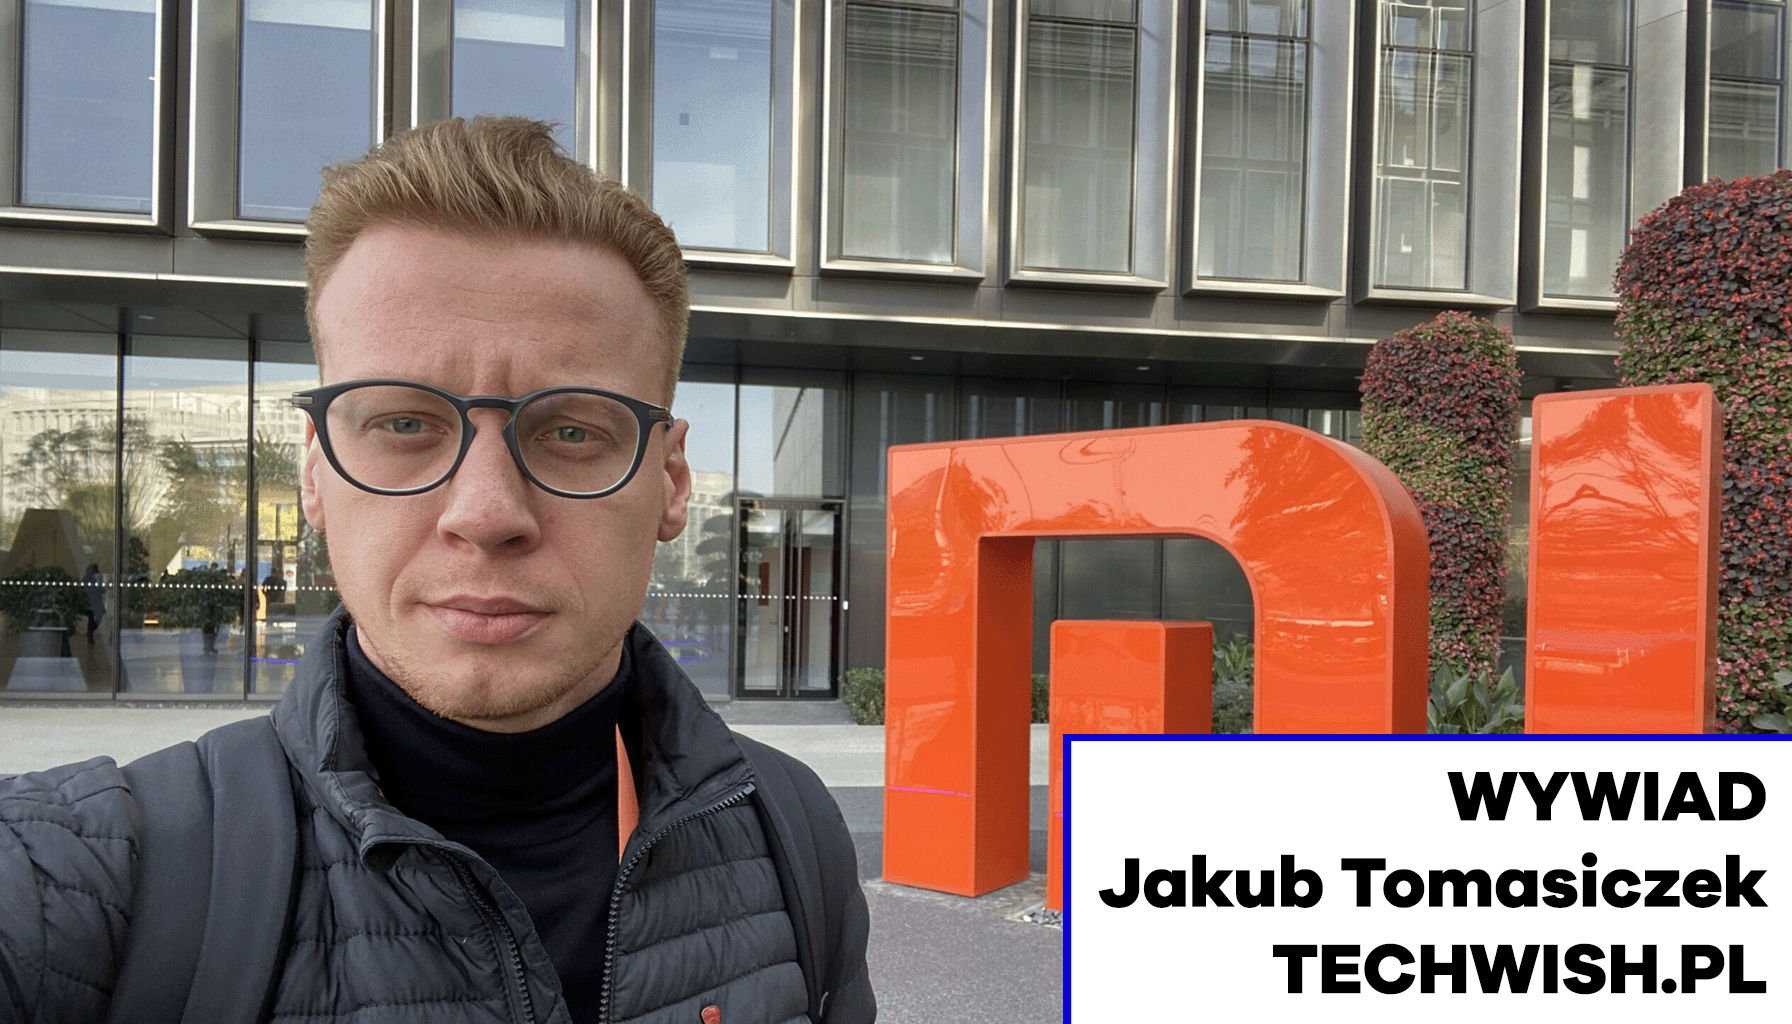 Wywiad z Jakubem Tomasiczkiem – założycielem Techwish.pl Technologie MEDIARUN.COM JAKUB TOMASICZEK TECHWISH WYWIAD V2